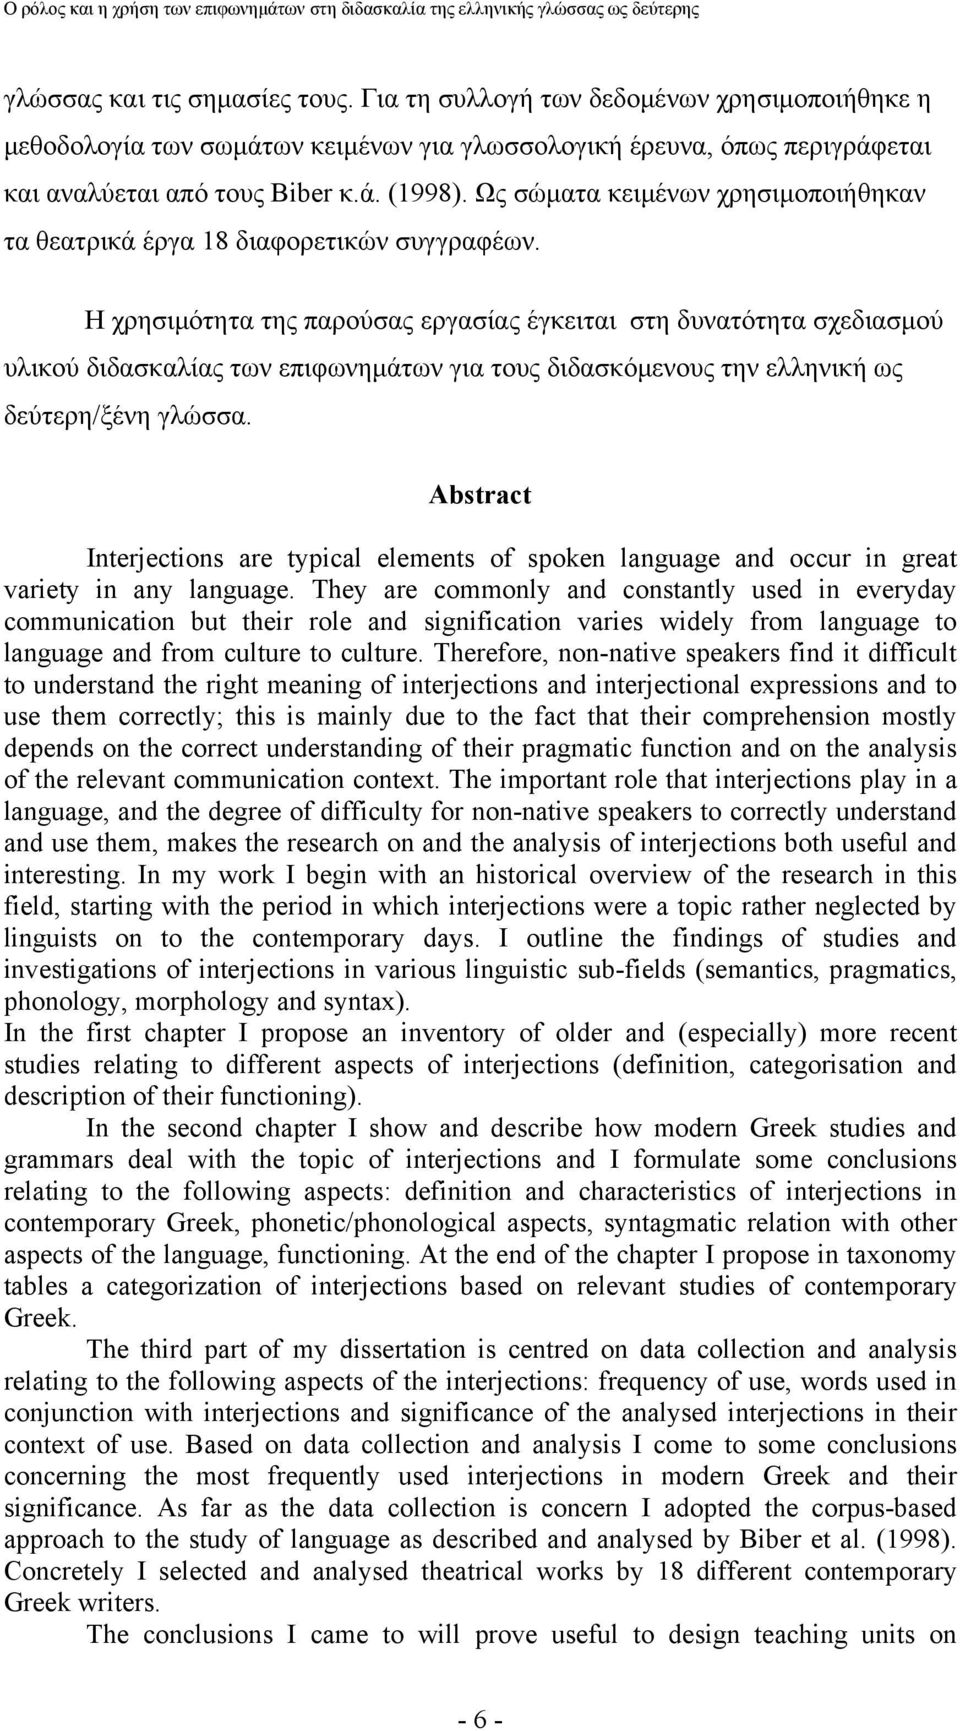 Η χρησιμότητα της παρούσας εργασίας έγκειται στη δυνατότητα σχεδιασμού υλικού διδασκαλίας των επιφωνημάτων για τους διδασκόμενους την ελληνική ως δεύτερη/ξένη γλώσσα.